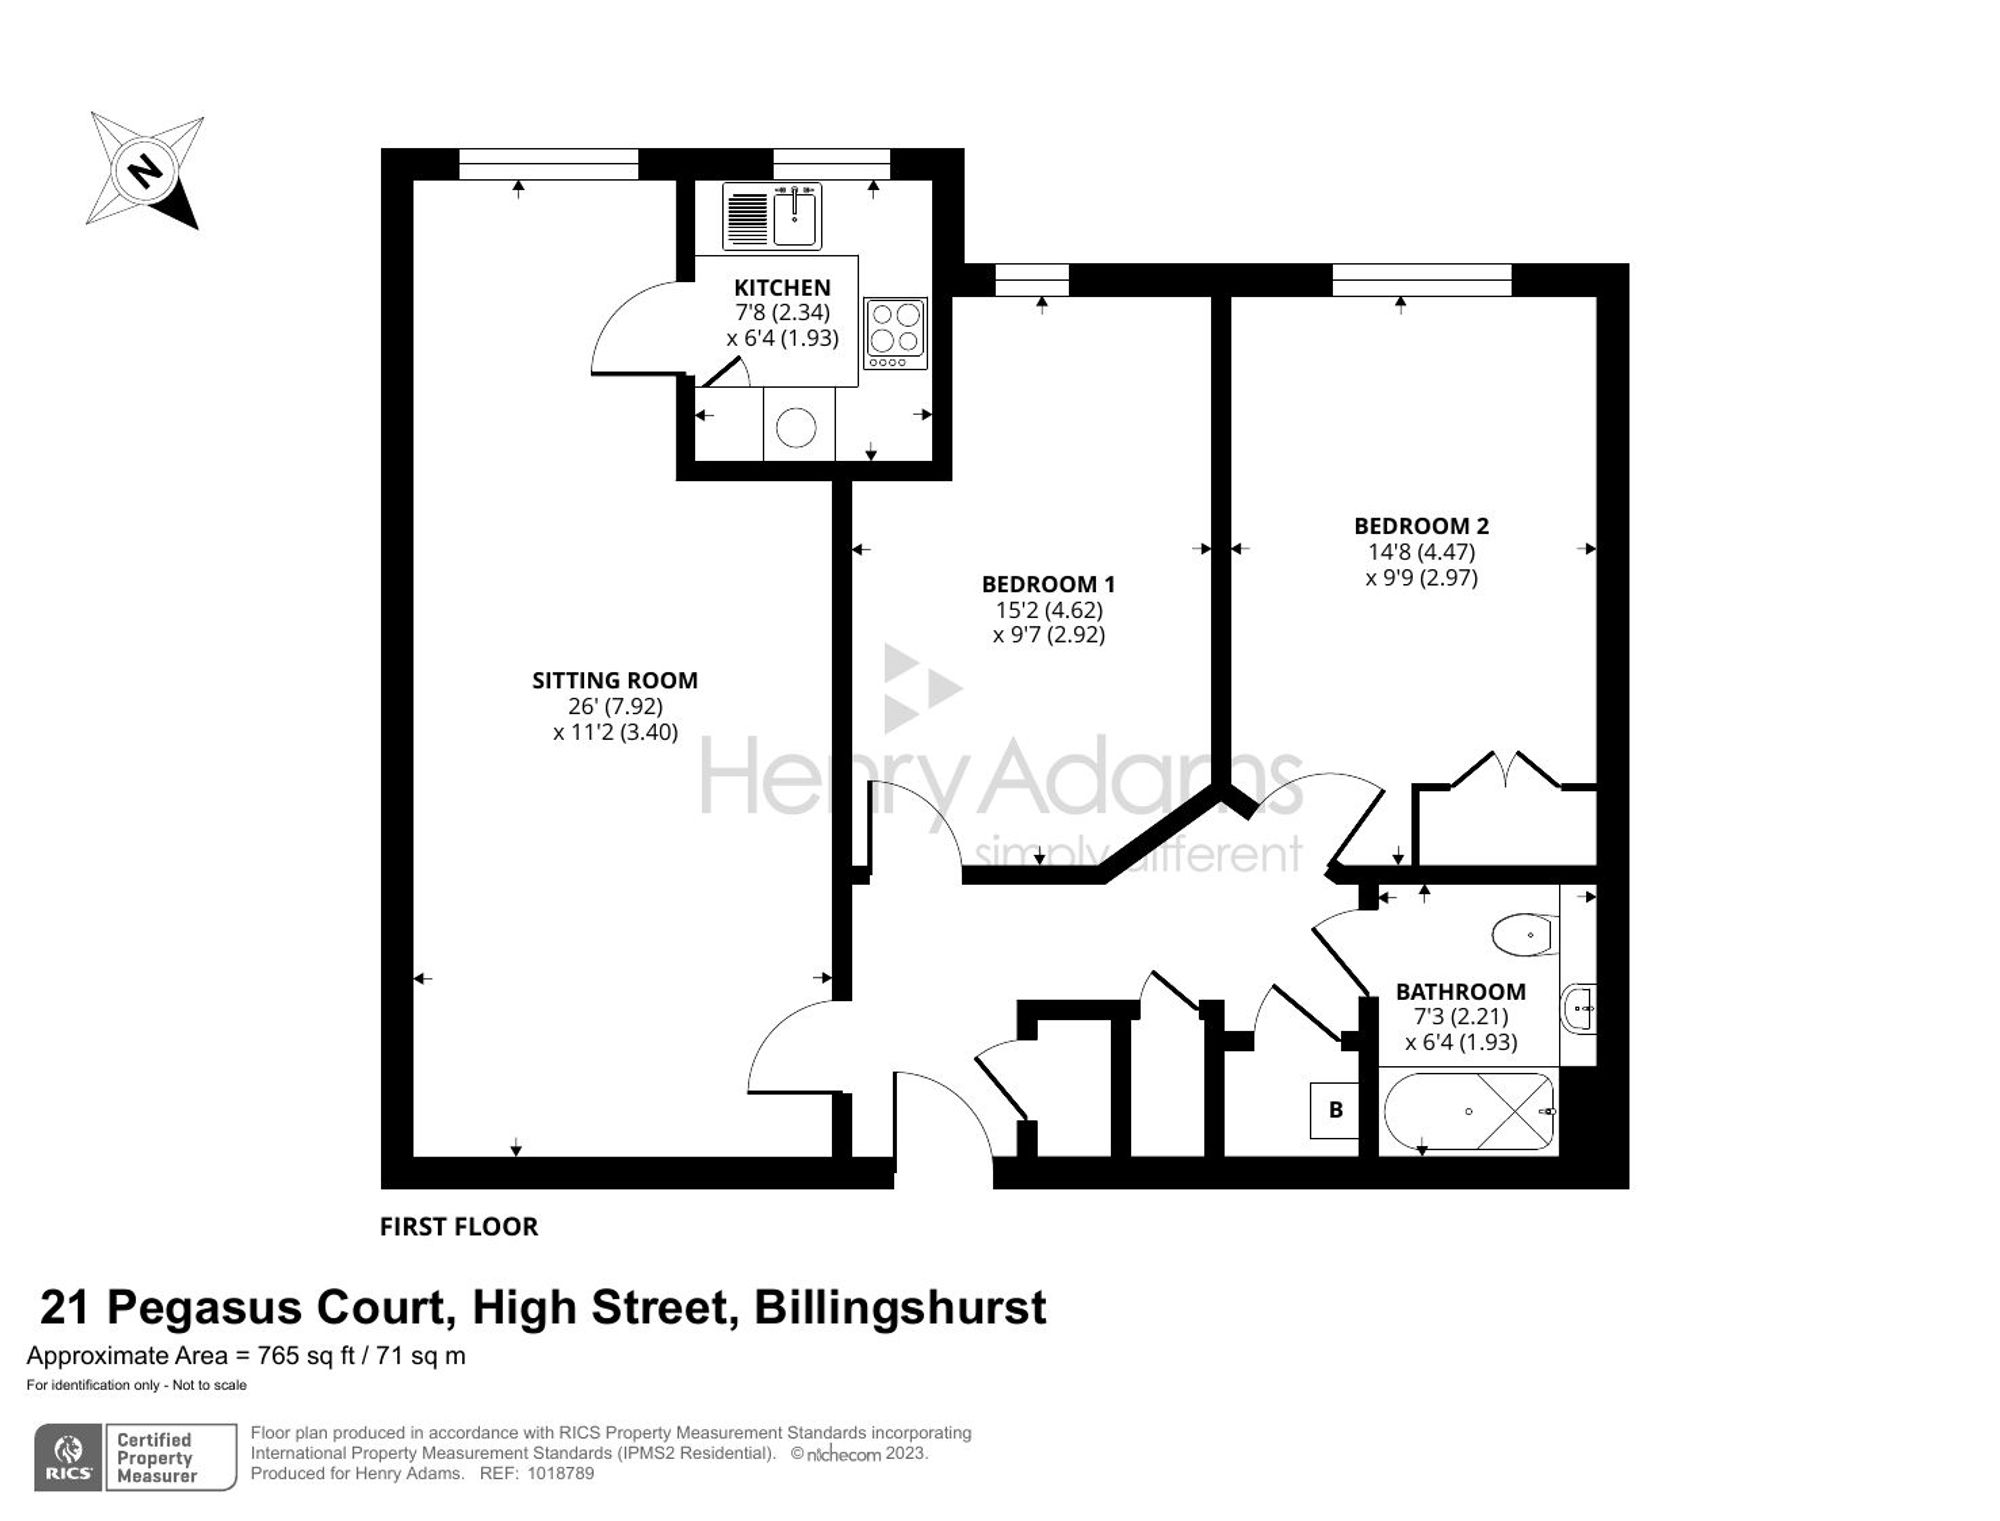 High Street, Billingshurst, RH14 floorplans